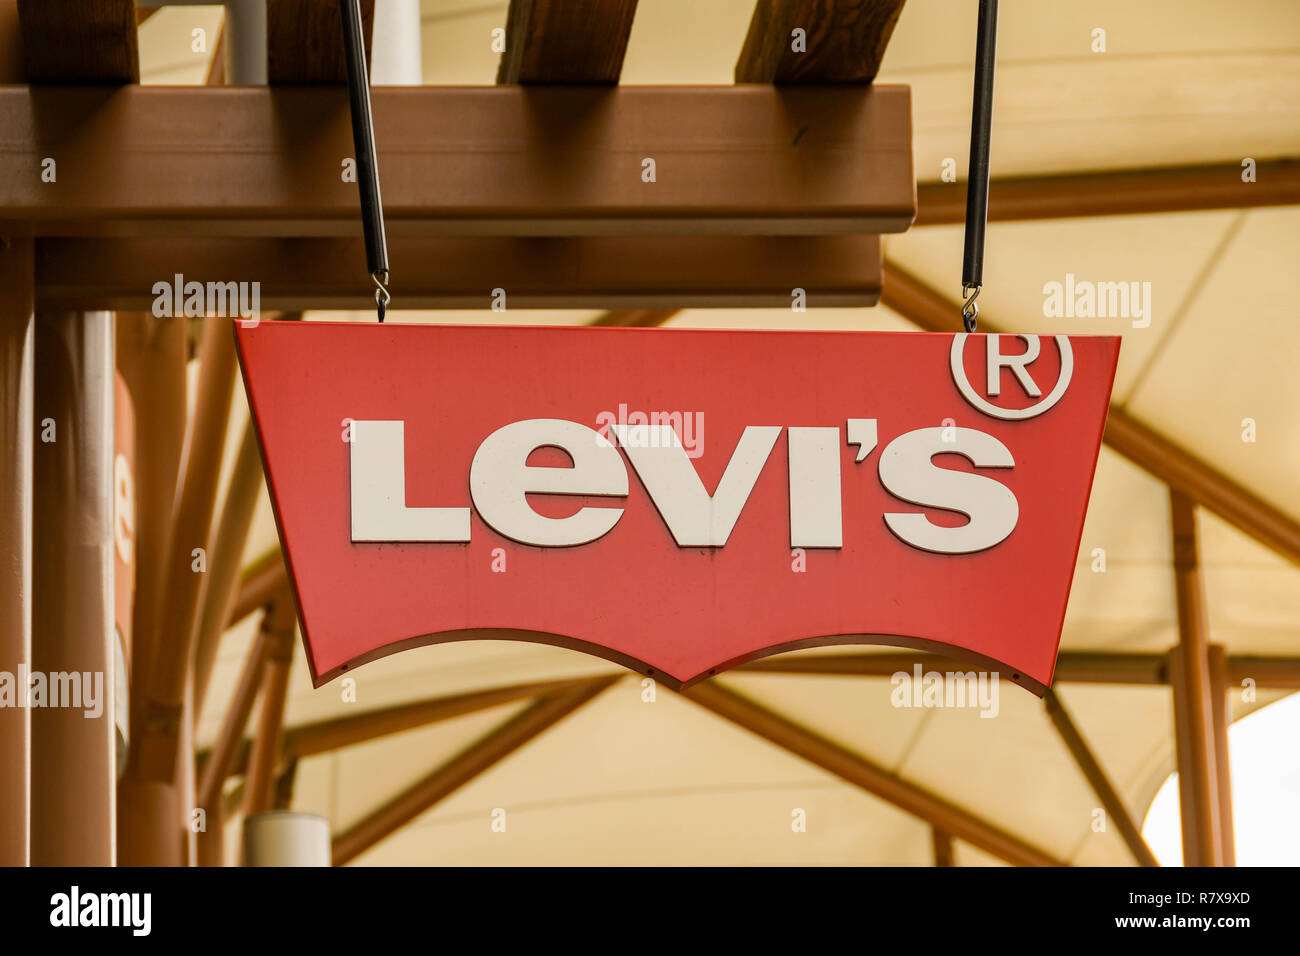 levis seattle premium outlets